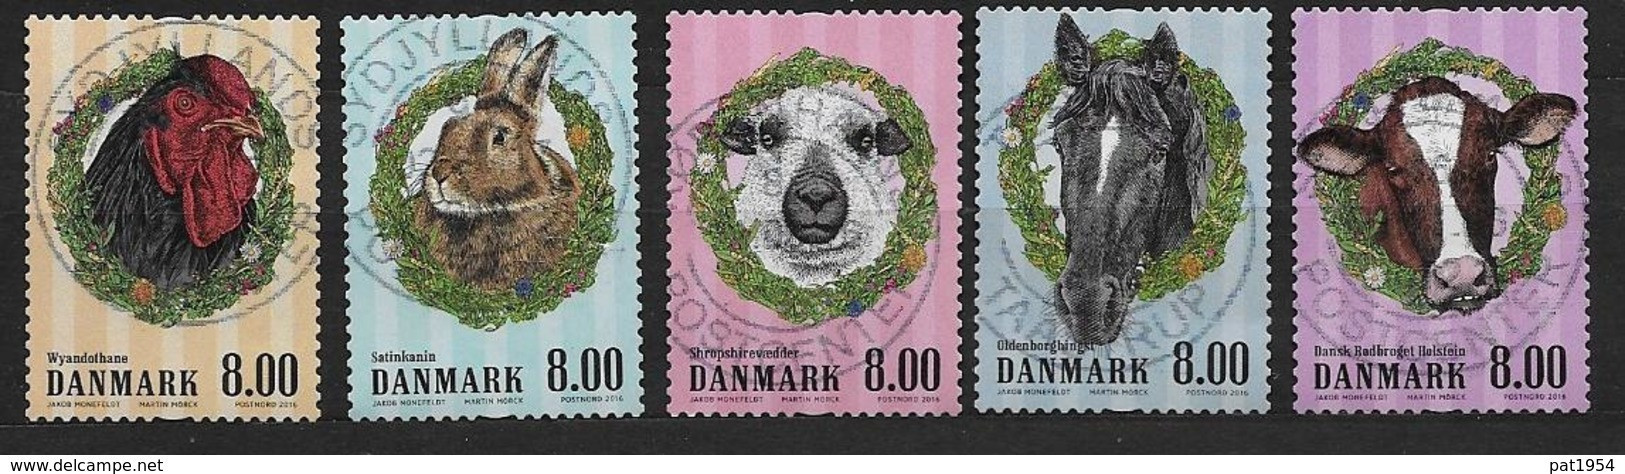 Danemark 2016 N° 1834/1838 Oblitérés Animaux De La Ferme - Usati